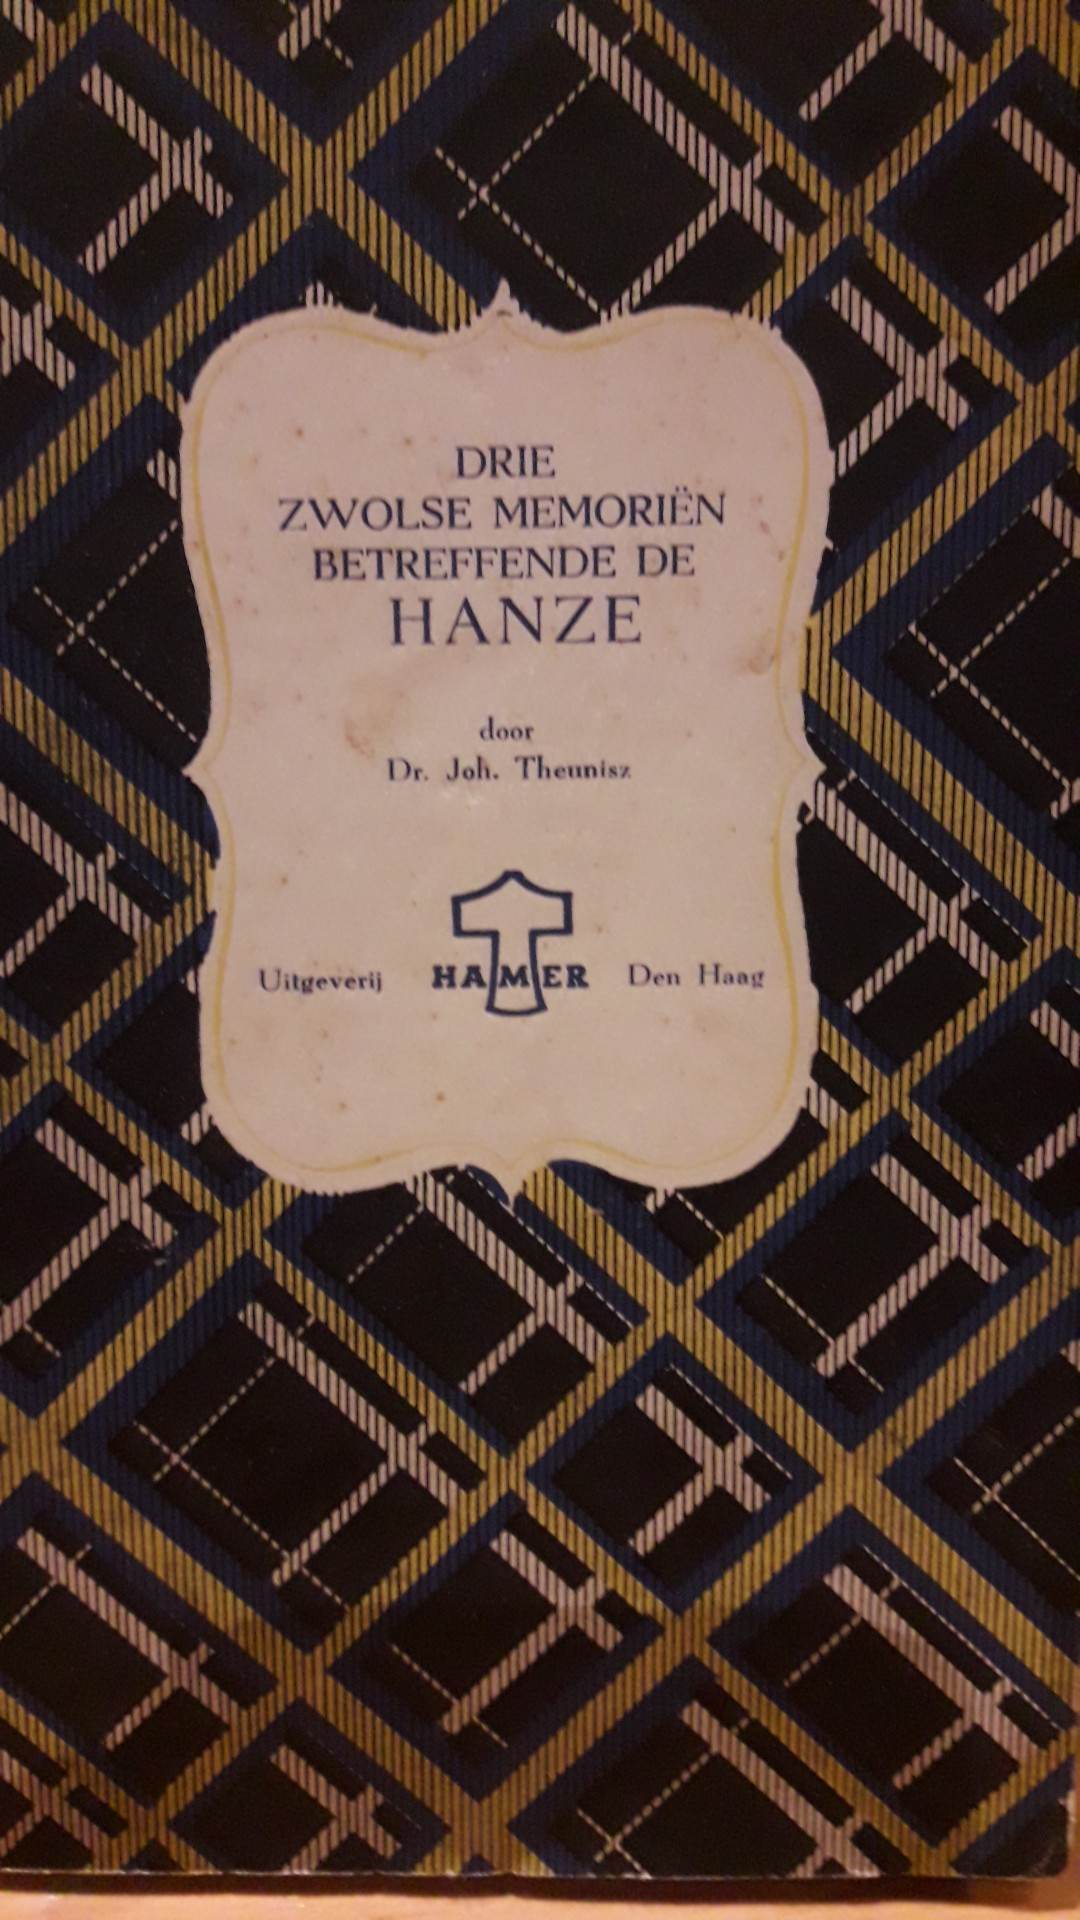 3 Zwolse memorien betreffende de Hanze - 72 blz / HAMER 1943 Collaboratie uitgeverij